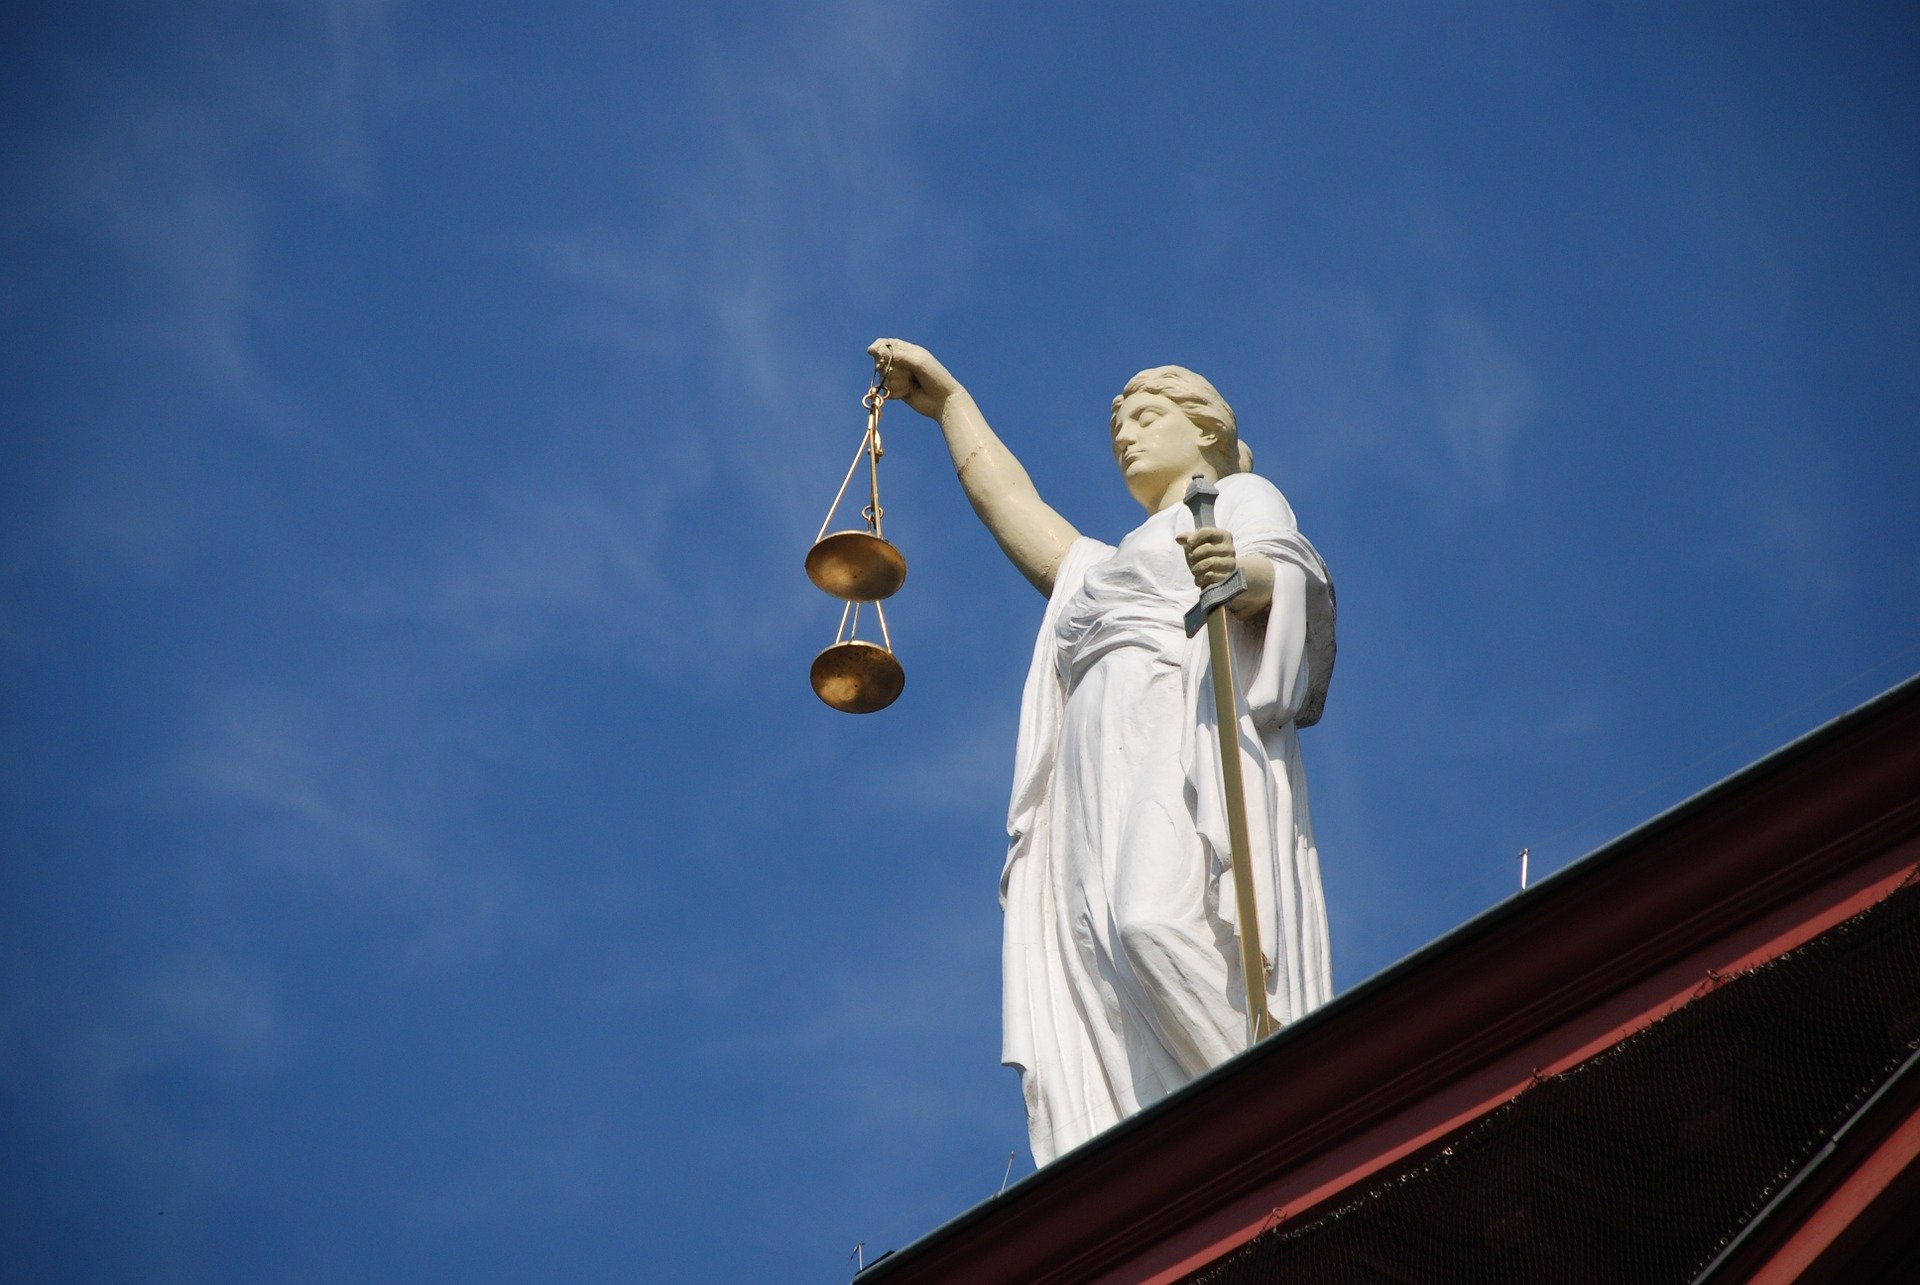 Justizia auf einem Dach, von unten fotografiert vor blauem Himmel. Rechtskonform laut EuGH: Gebrauchte Software.